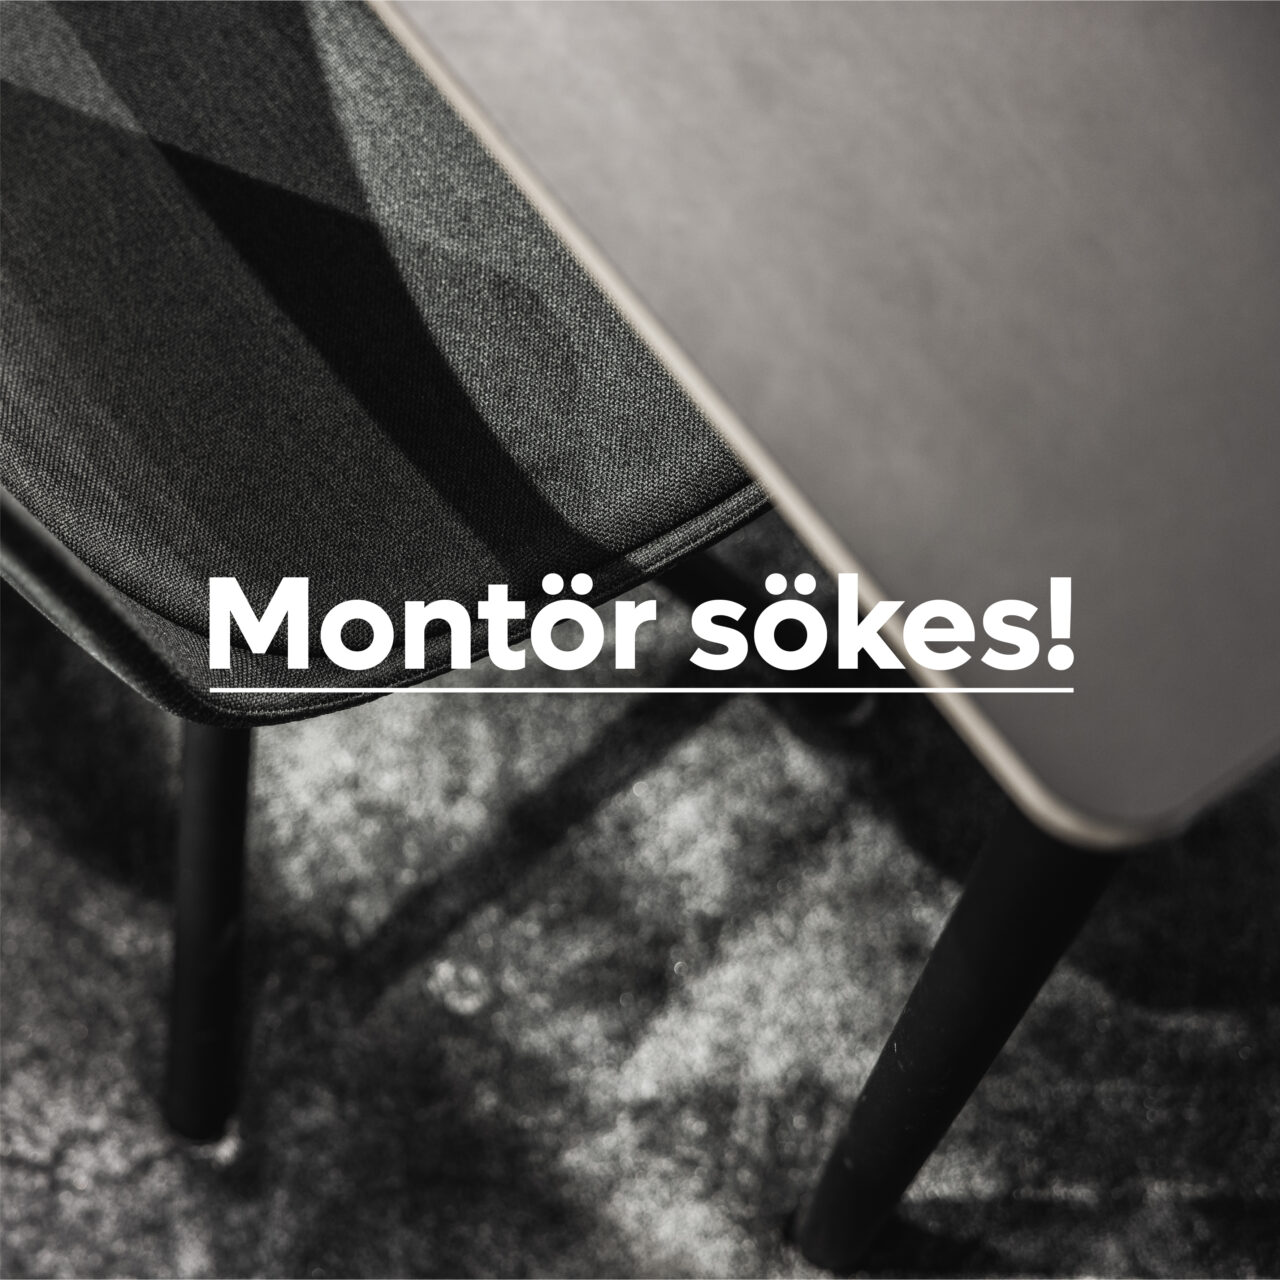 montor-sokes_Ideas